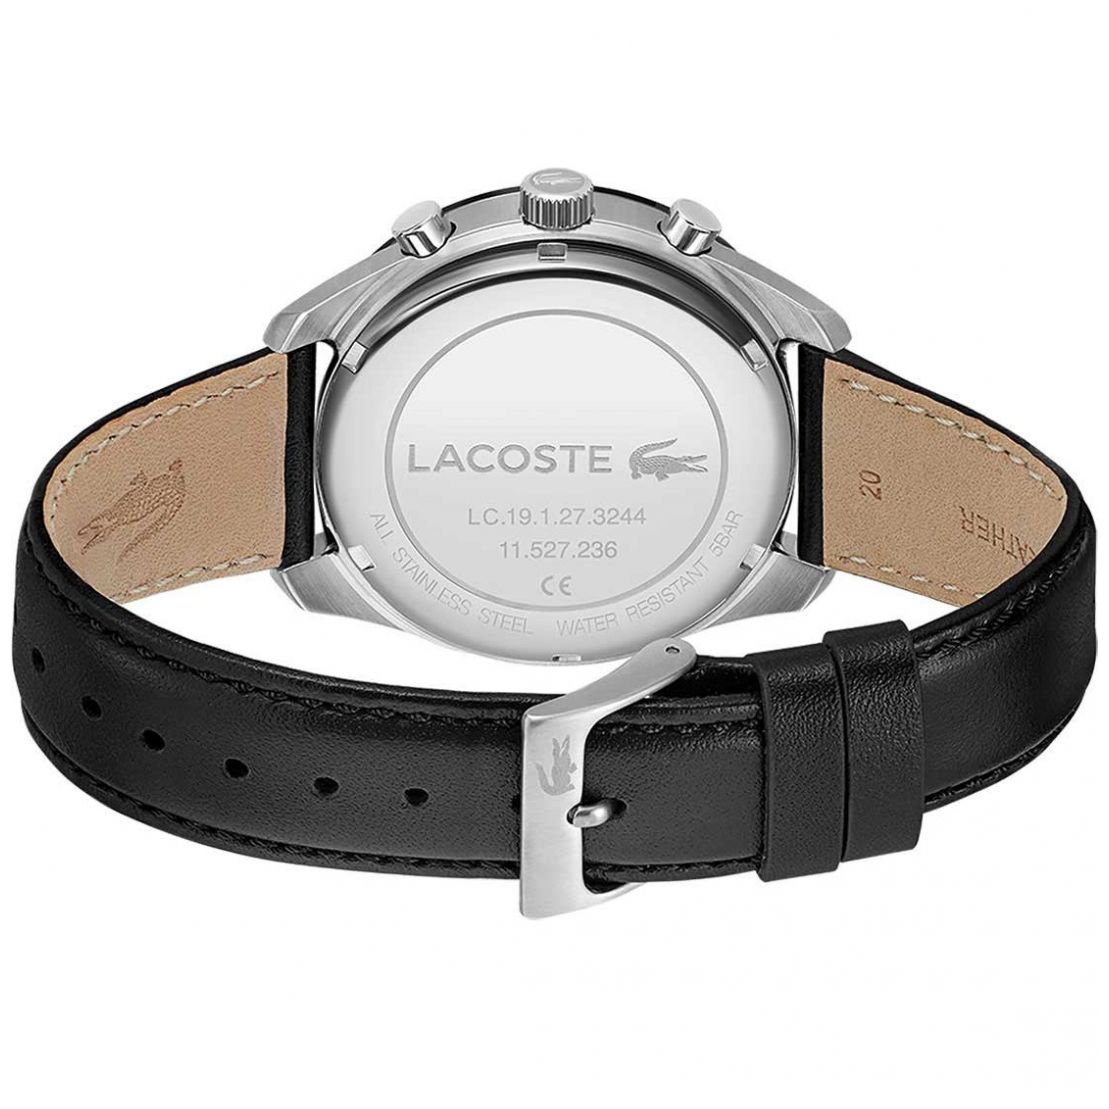 Reloj Lacoste para Hombre Modelo Elo 2011109